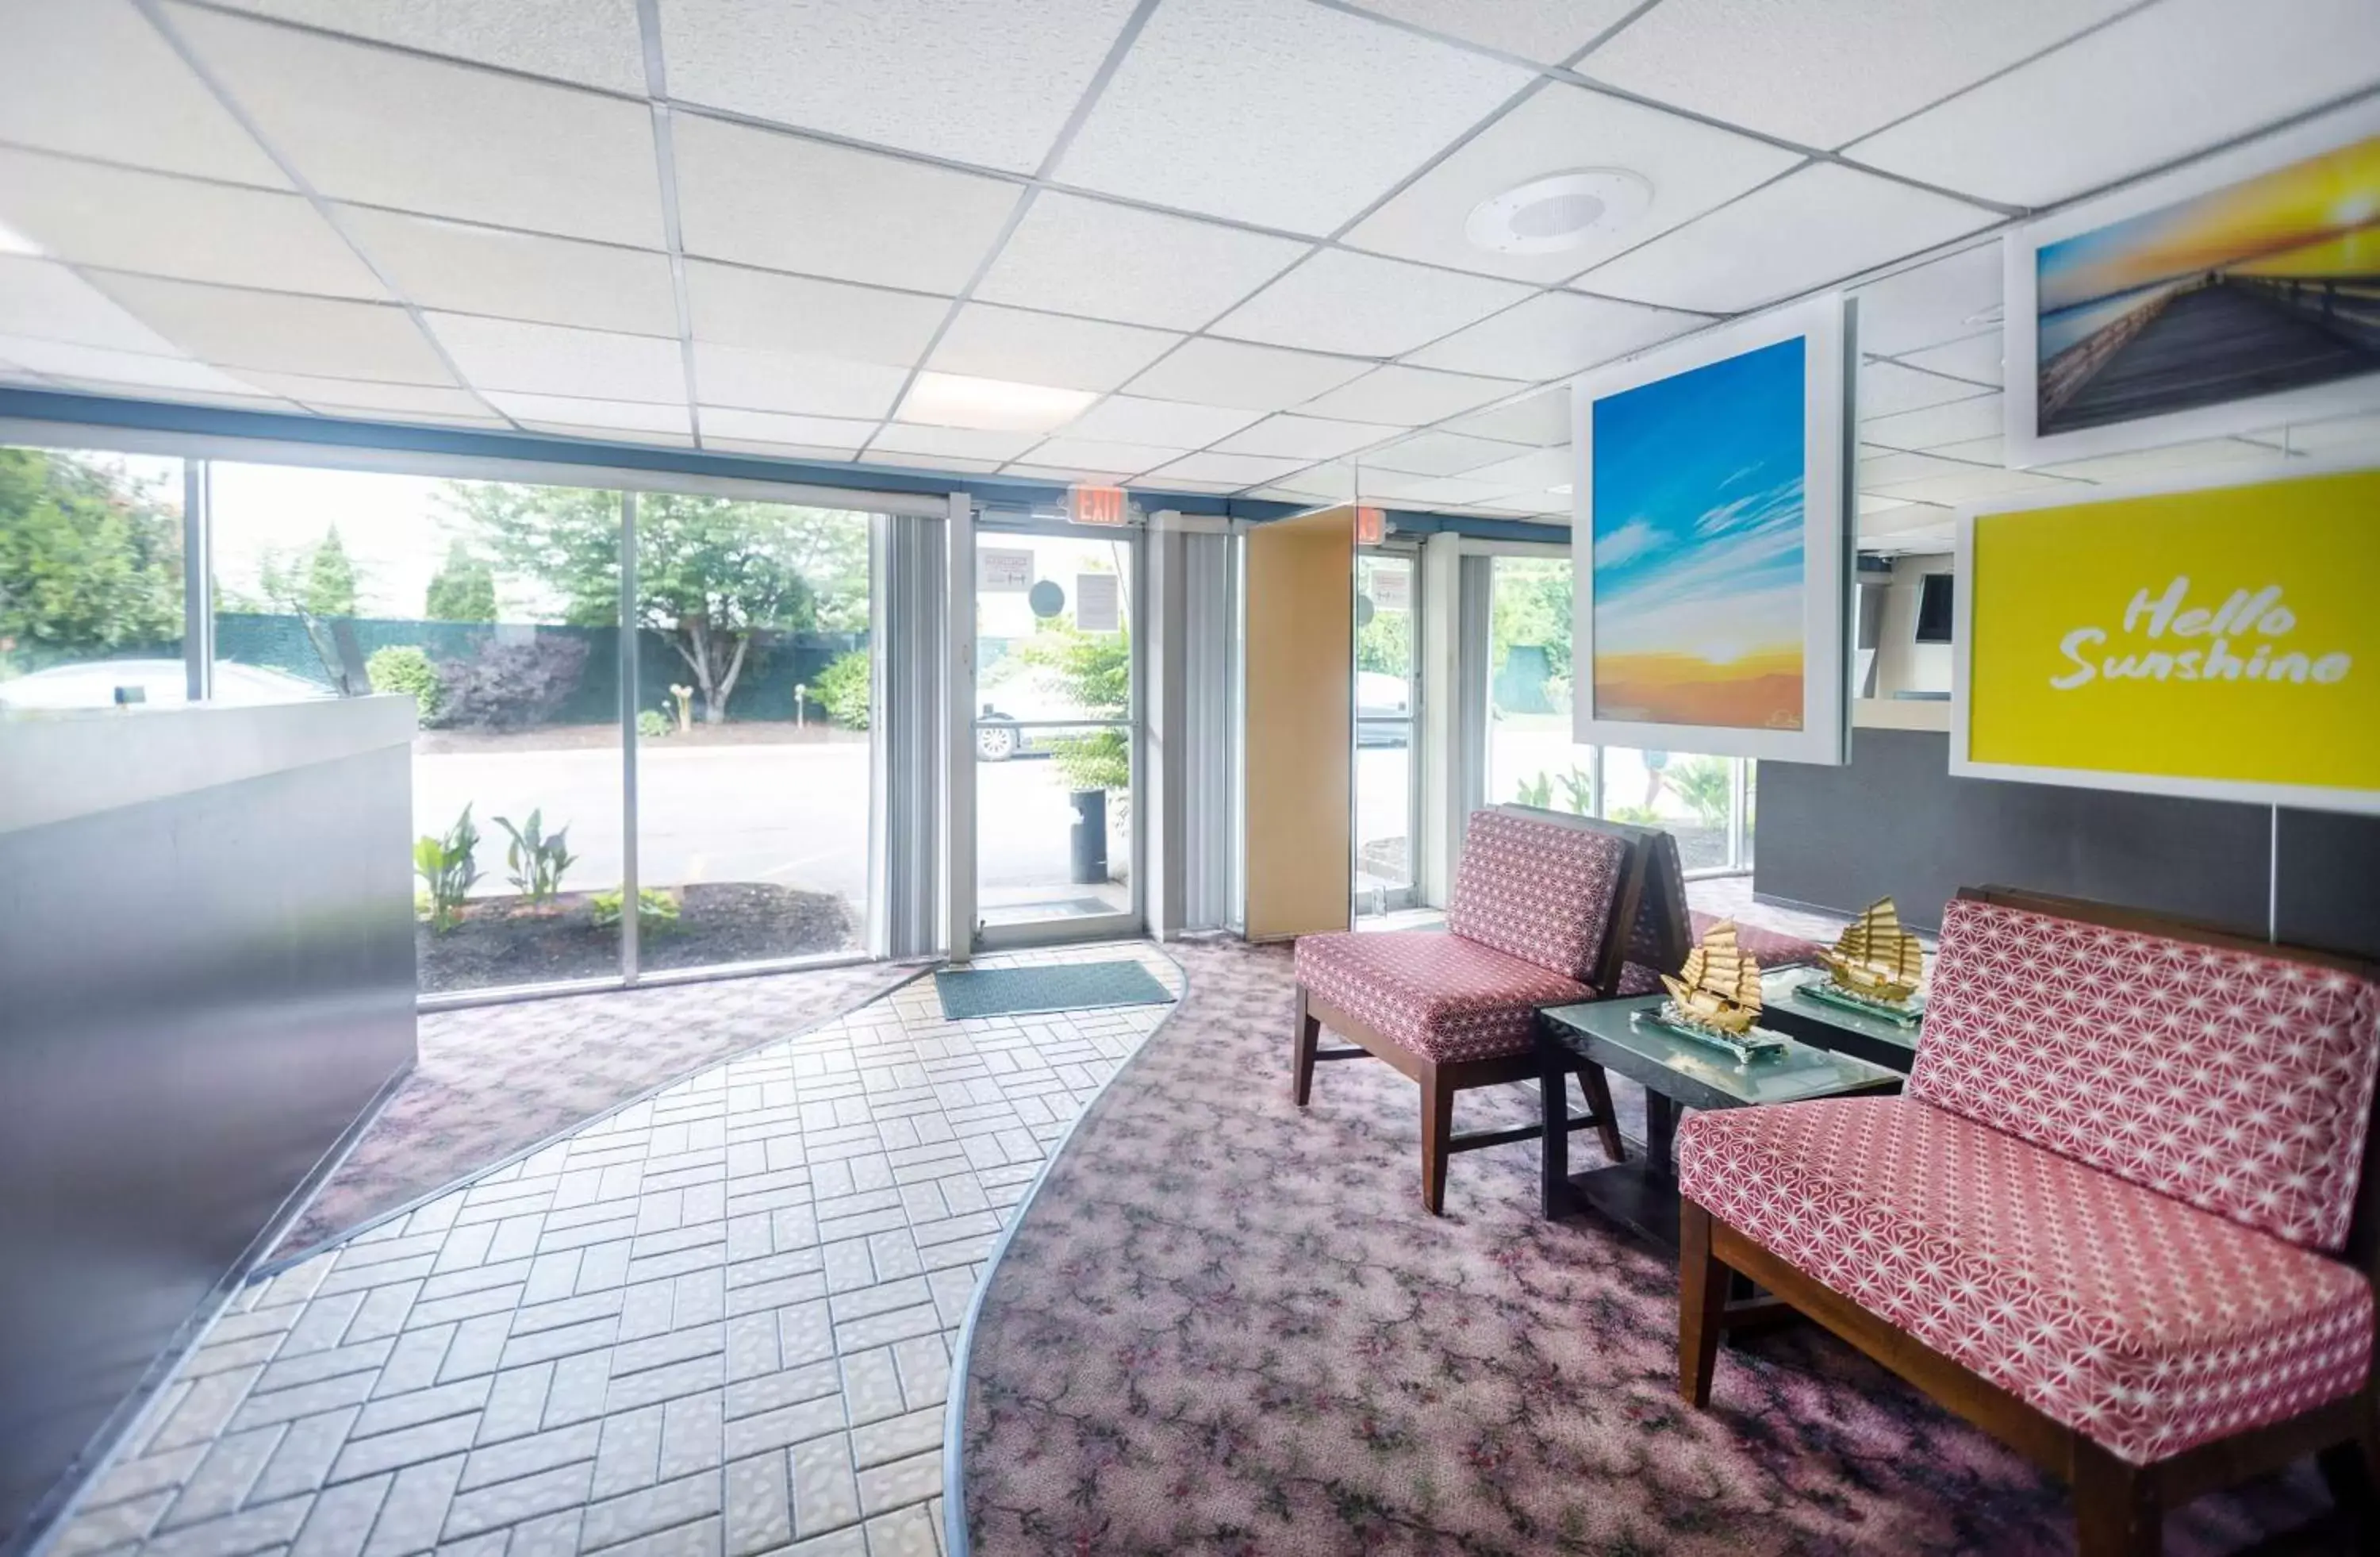 Lobby or reception in Days Inn by Wyndham Hicksville Long Island